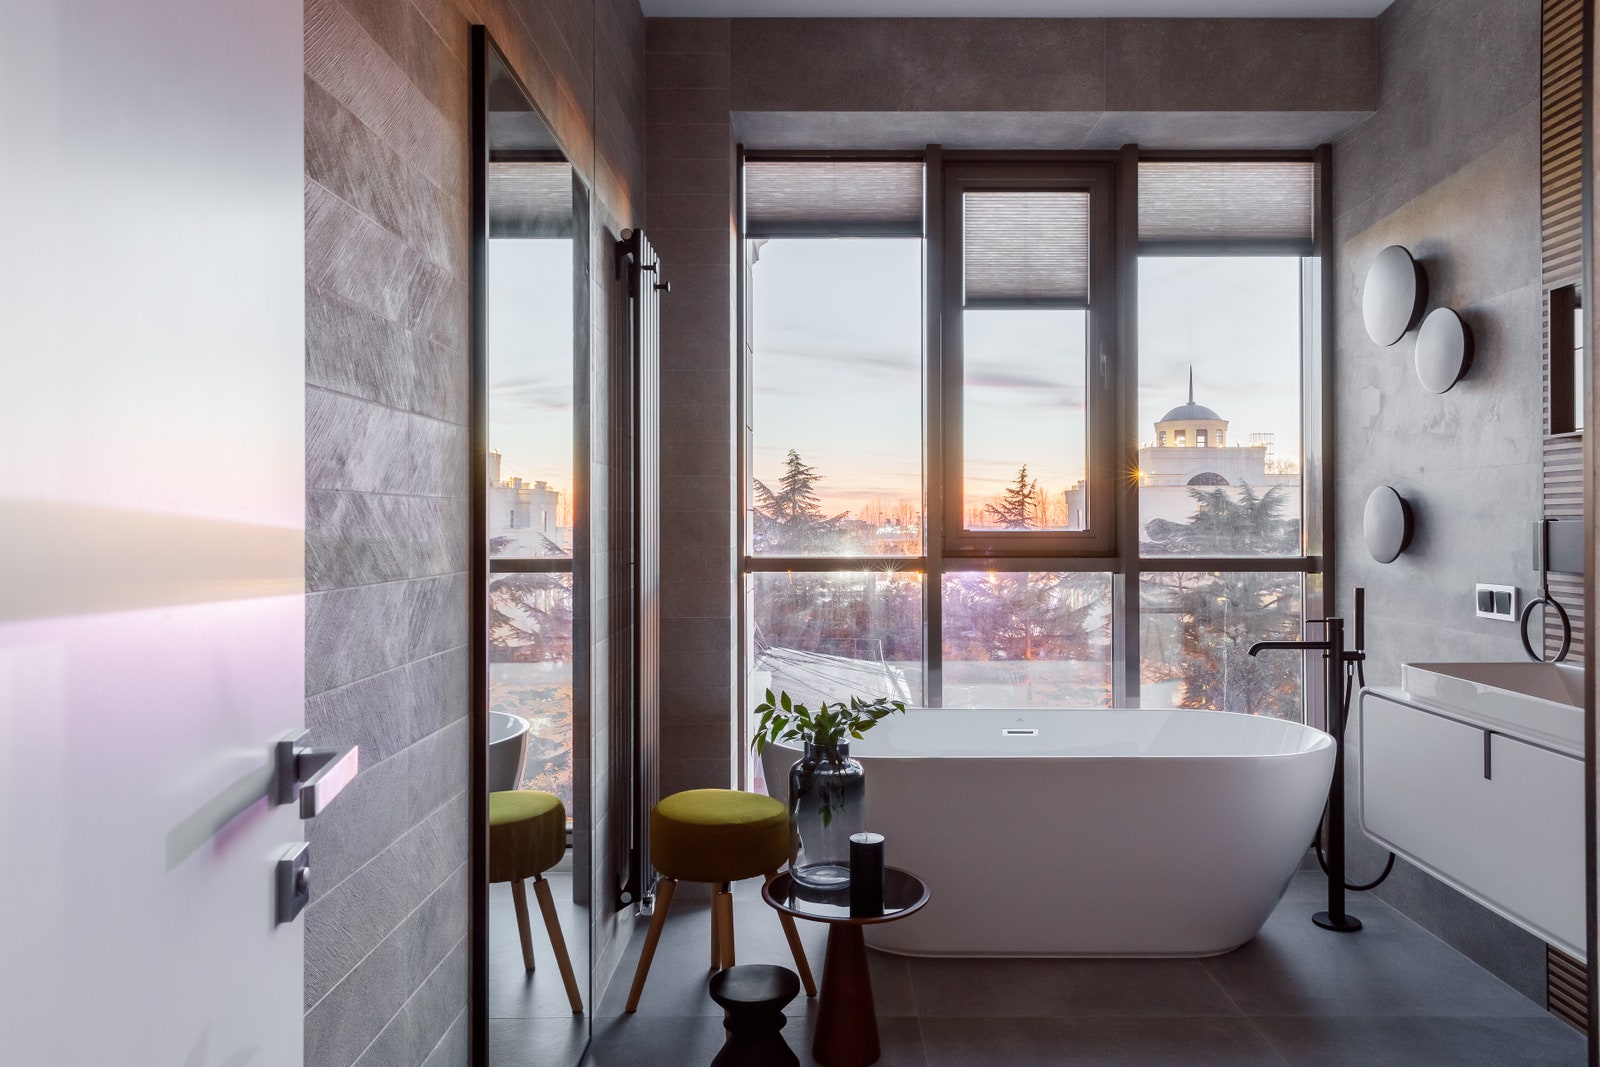 Ванная комната с панорамным окном из которого открывается чудесный вид на город и море.